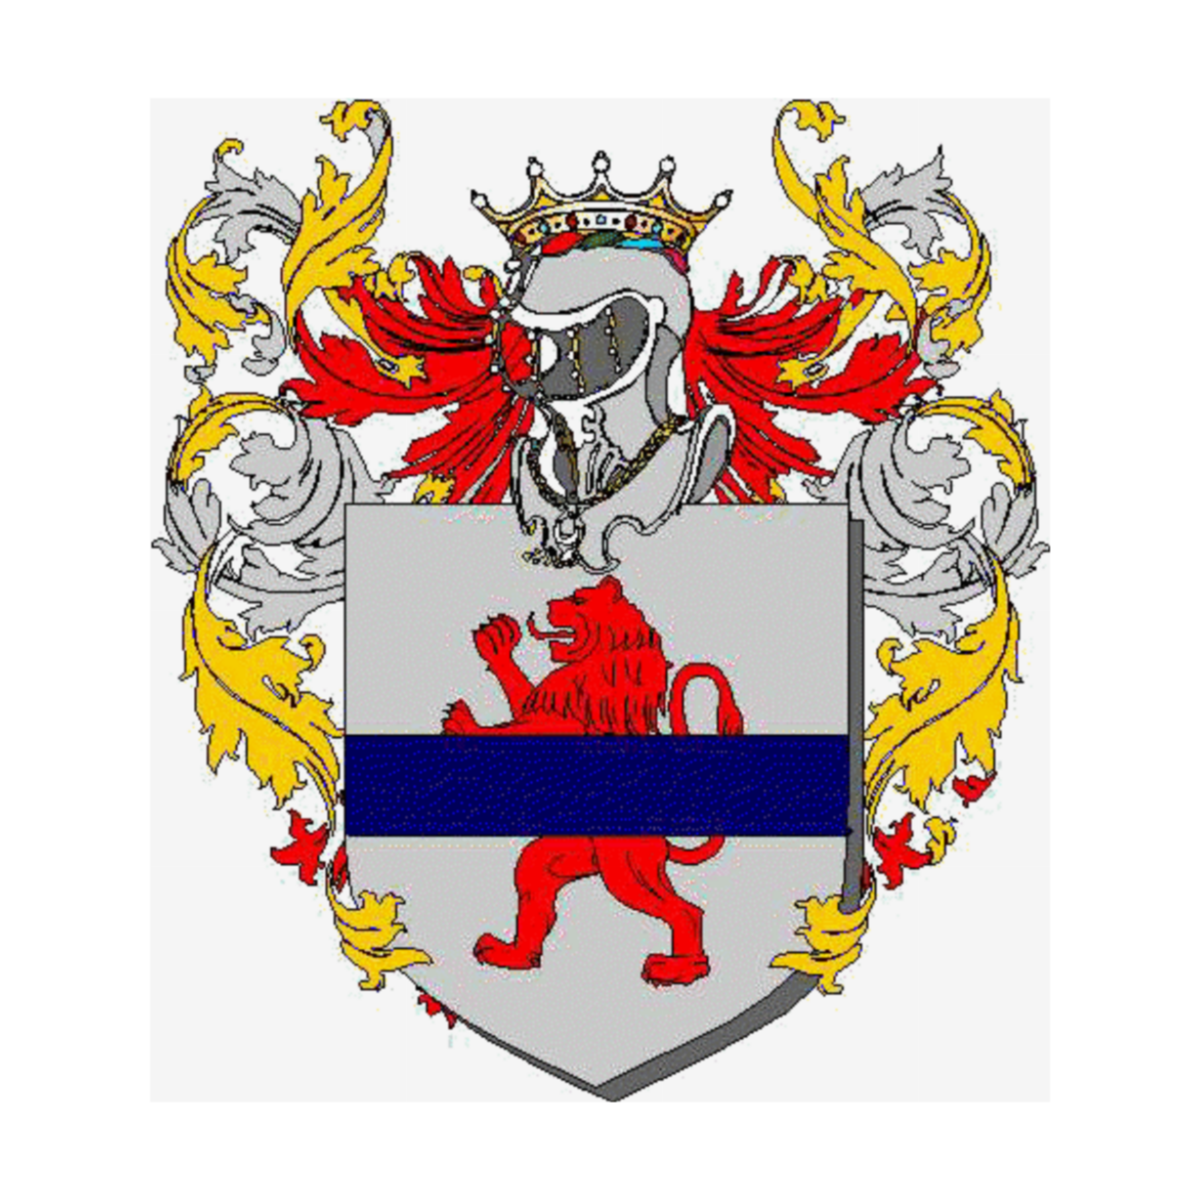 Wappen der Familie Bellavia Messana